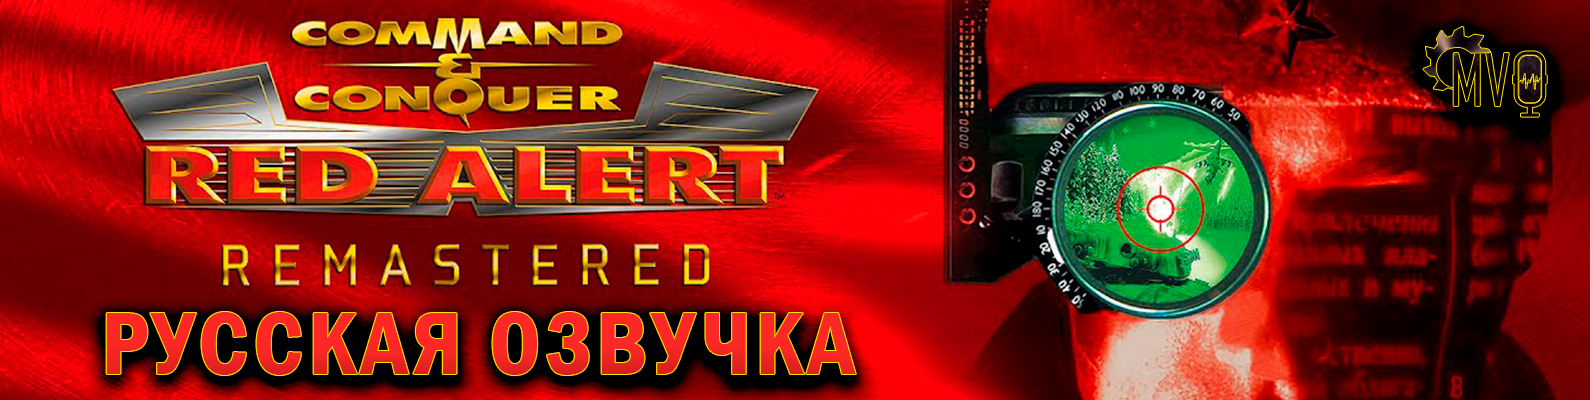 Command & Conquer Red Alert - Remastered: Демонстрация голосов Тополева и Карвилла в озвучке от R.G. MVO